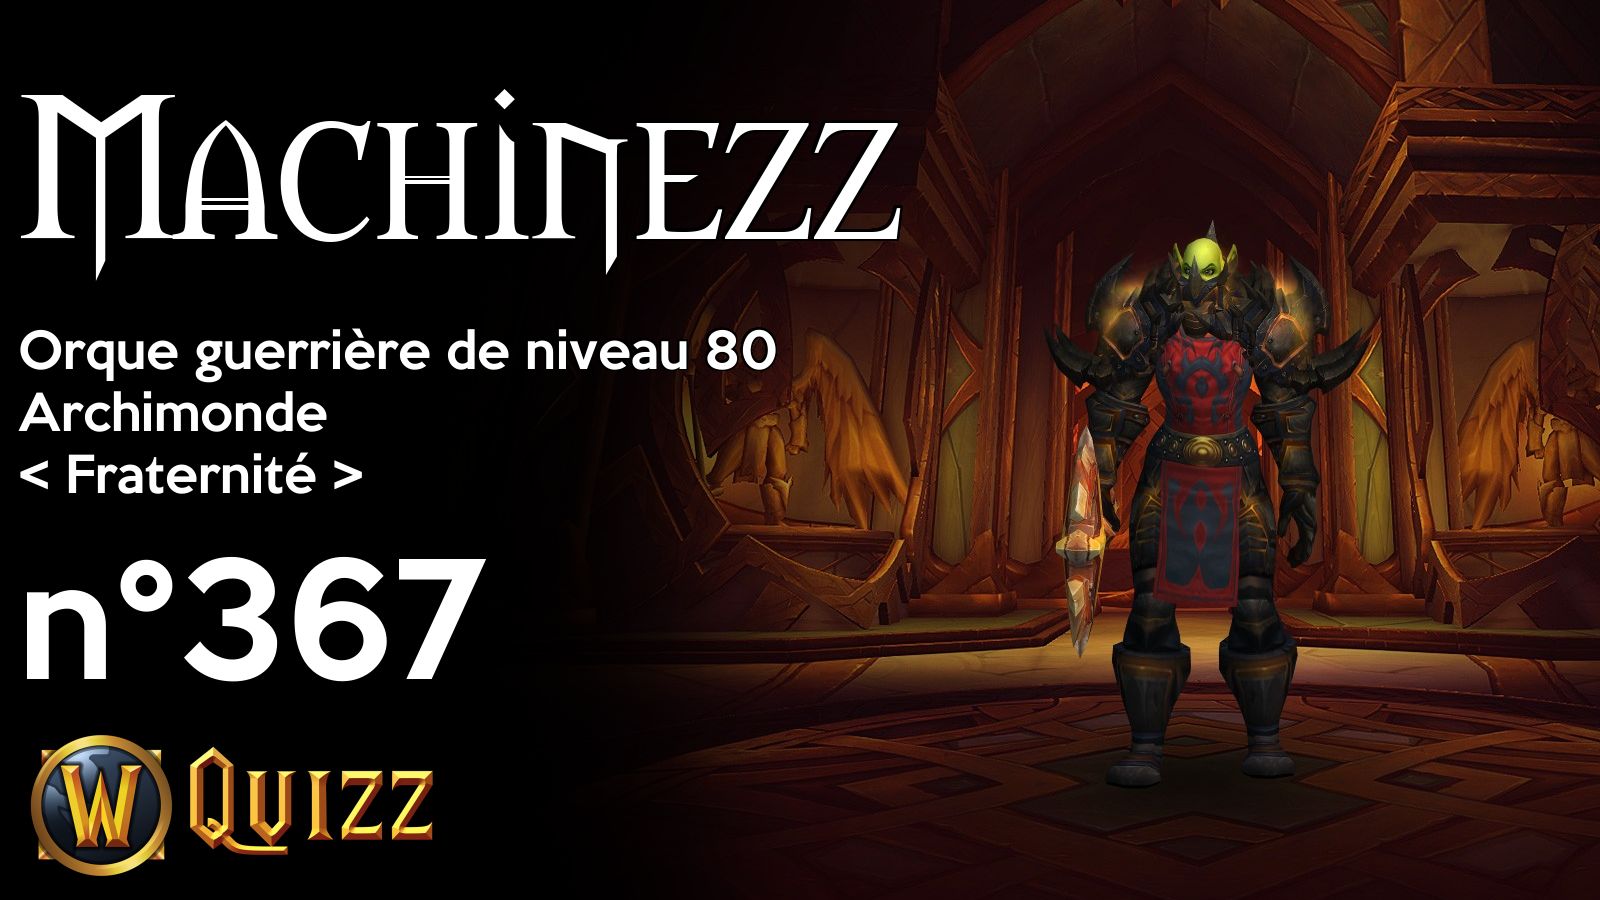 Machinezz, Orque guerrière de niveau 80, Archimonde